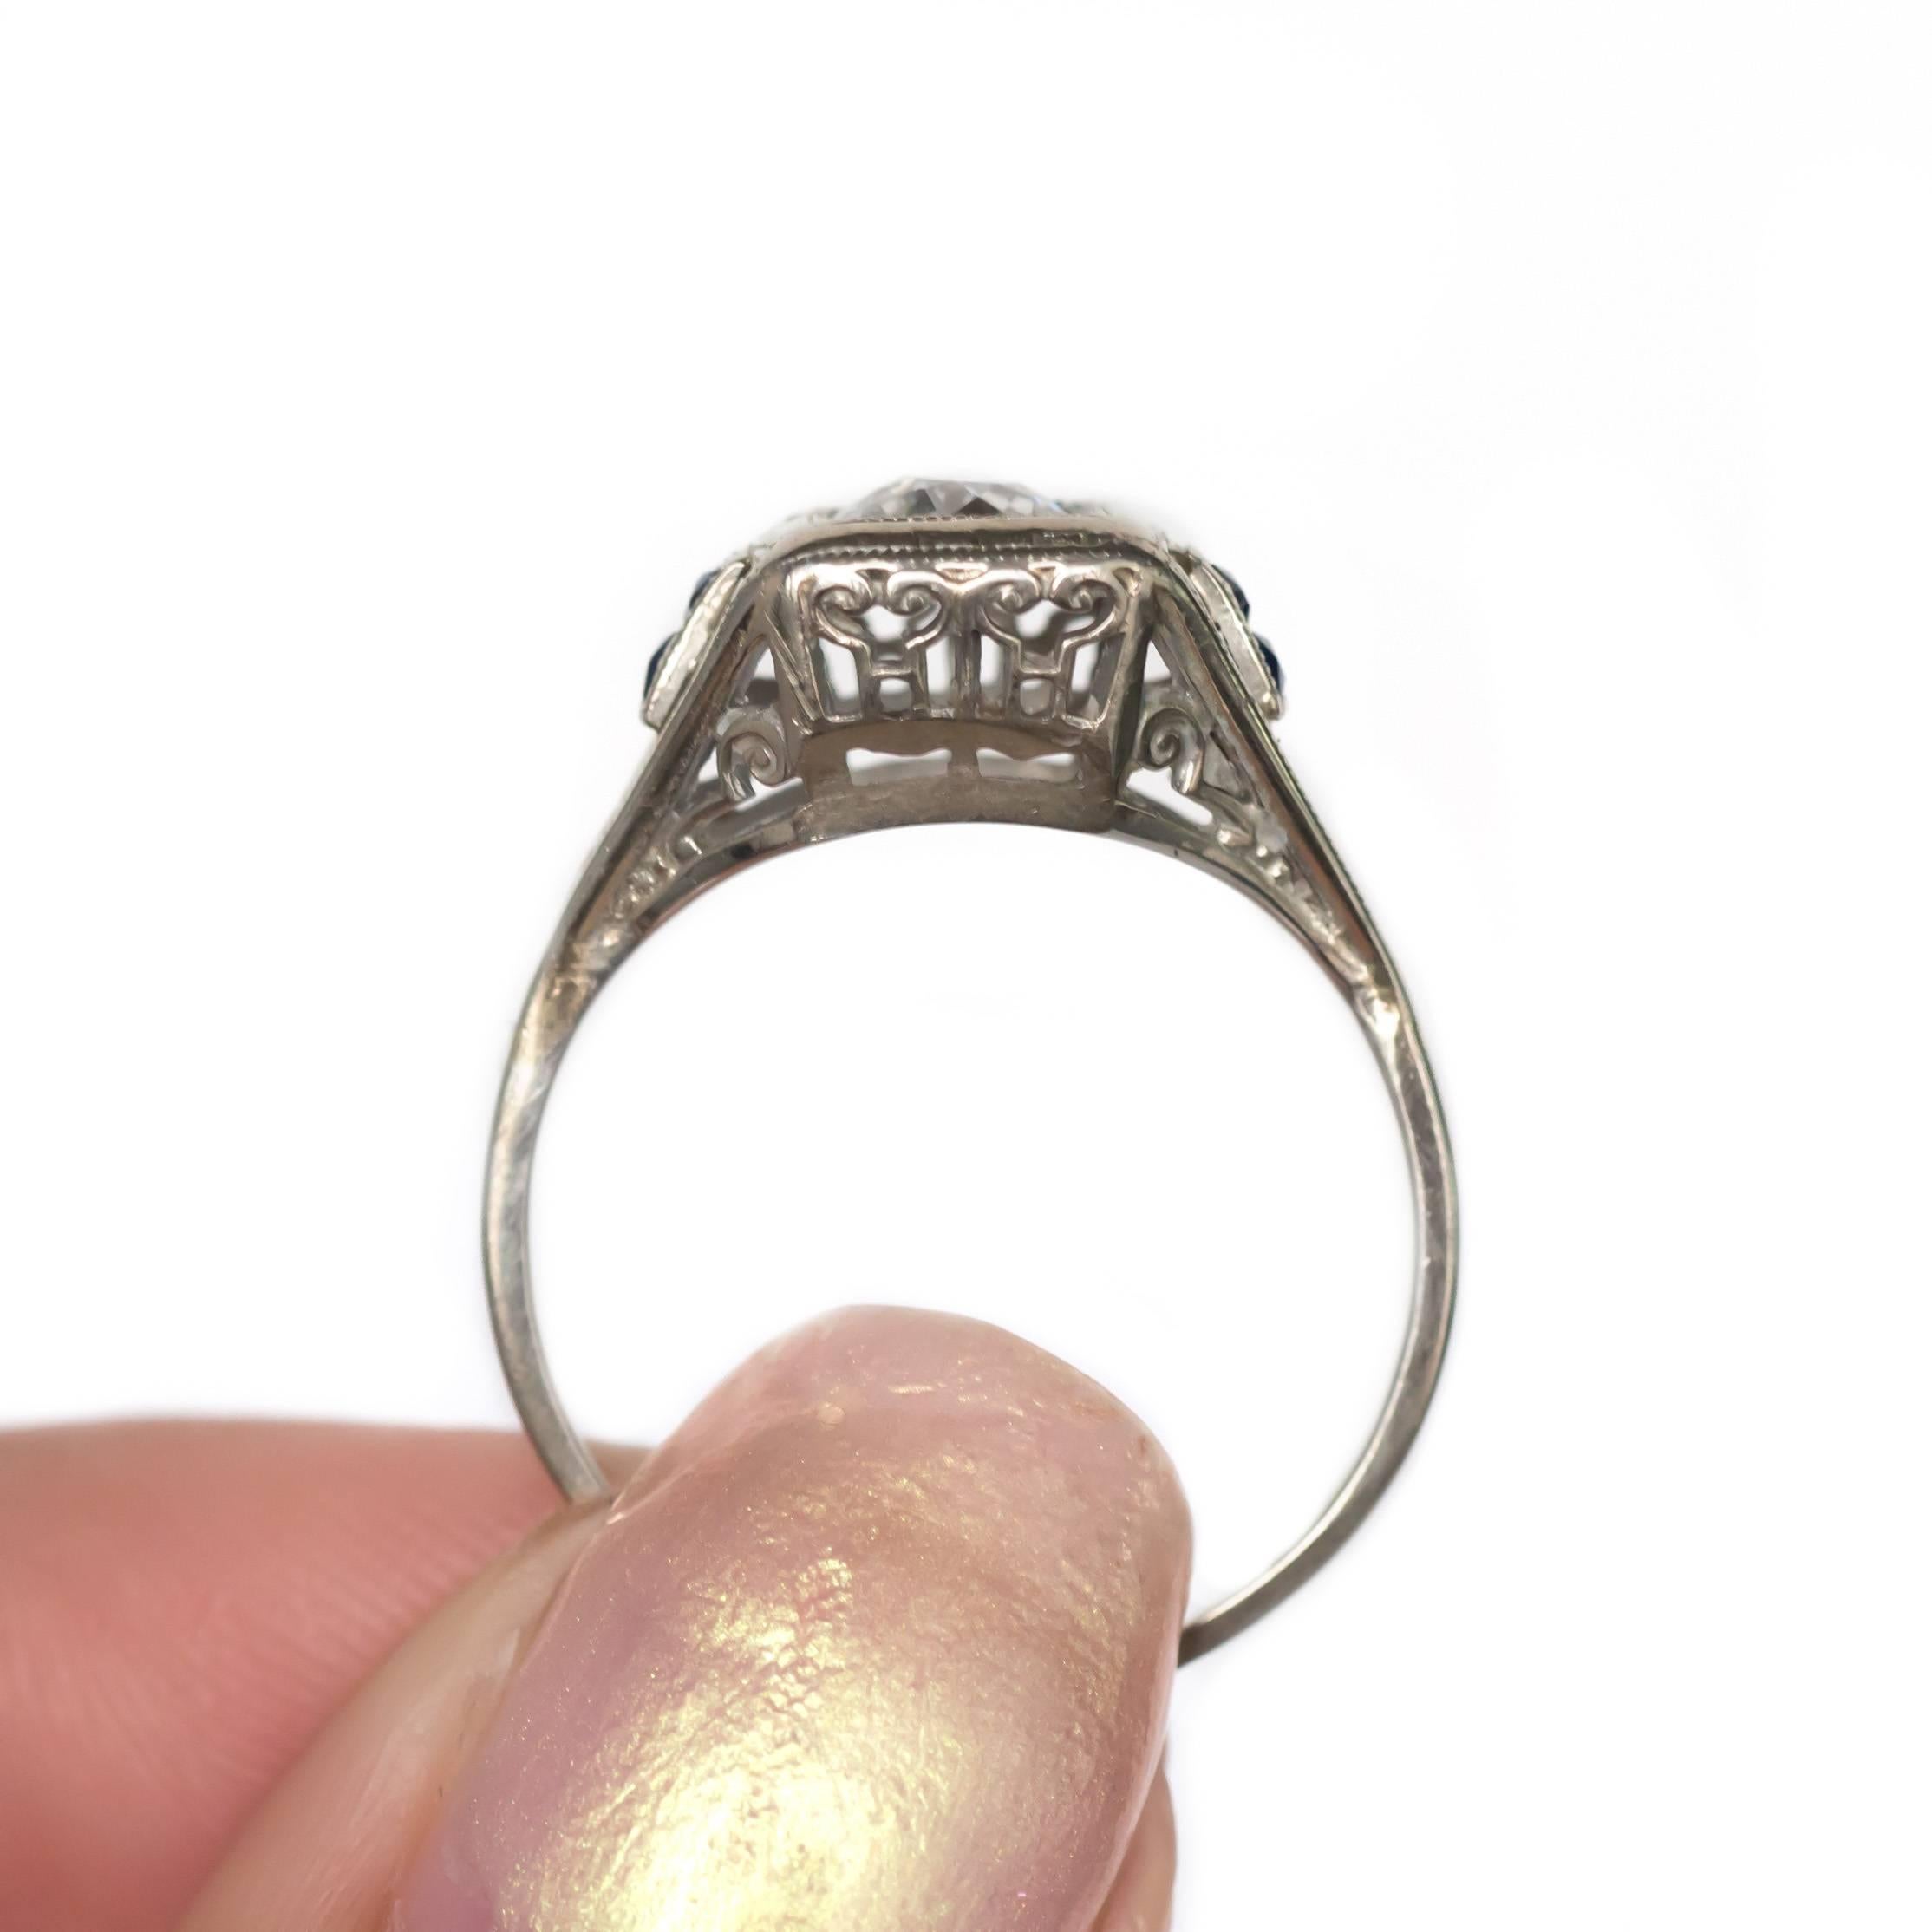 40 carat ring